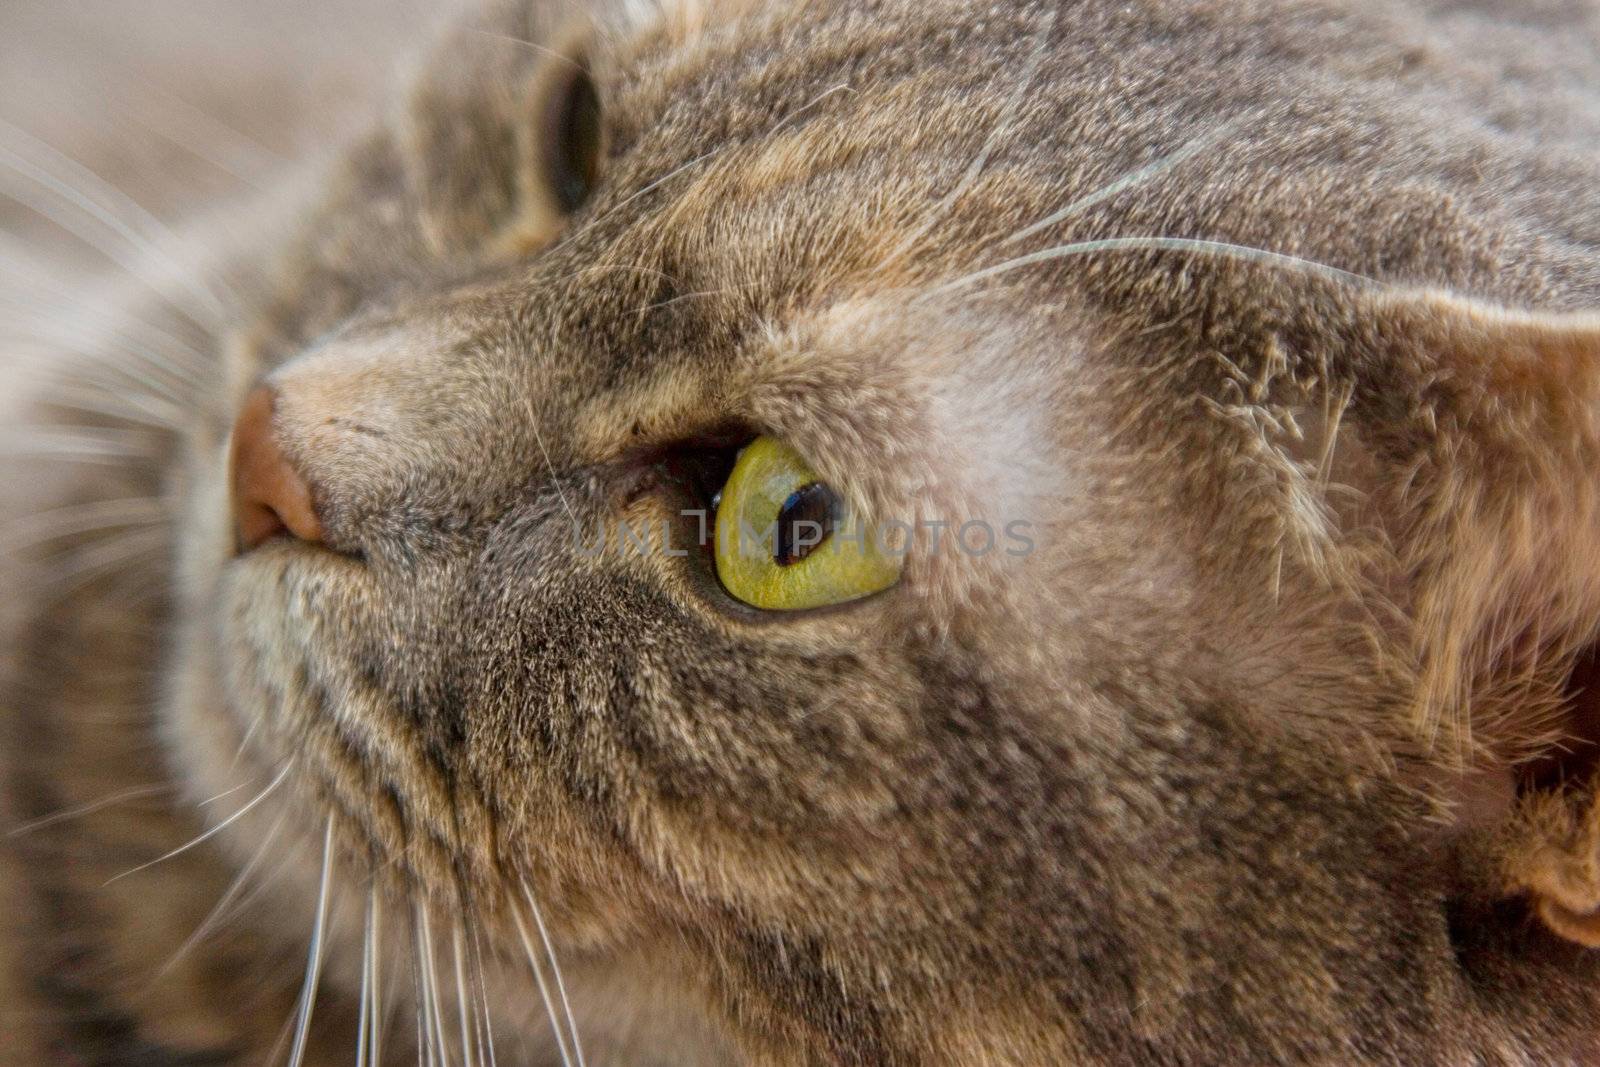 Portrait of a cat's eye.